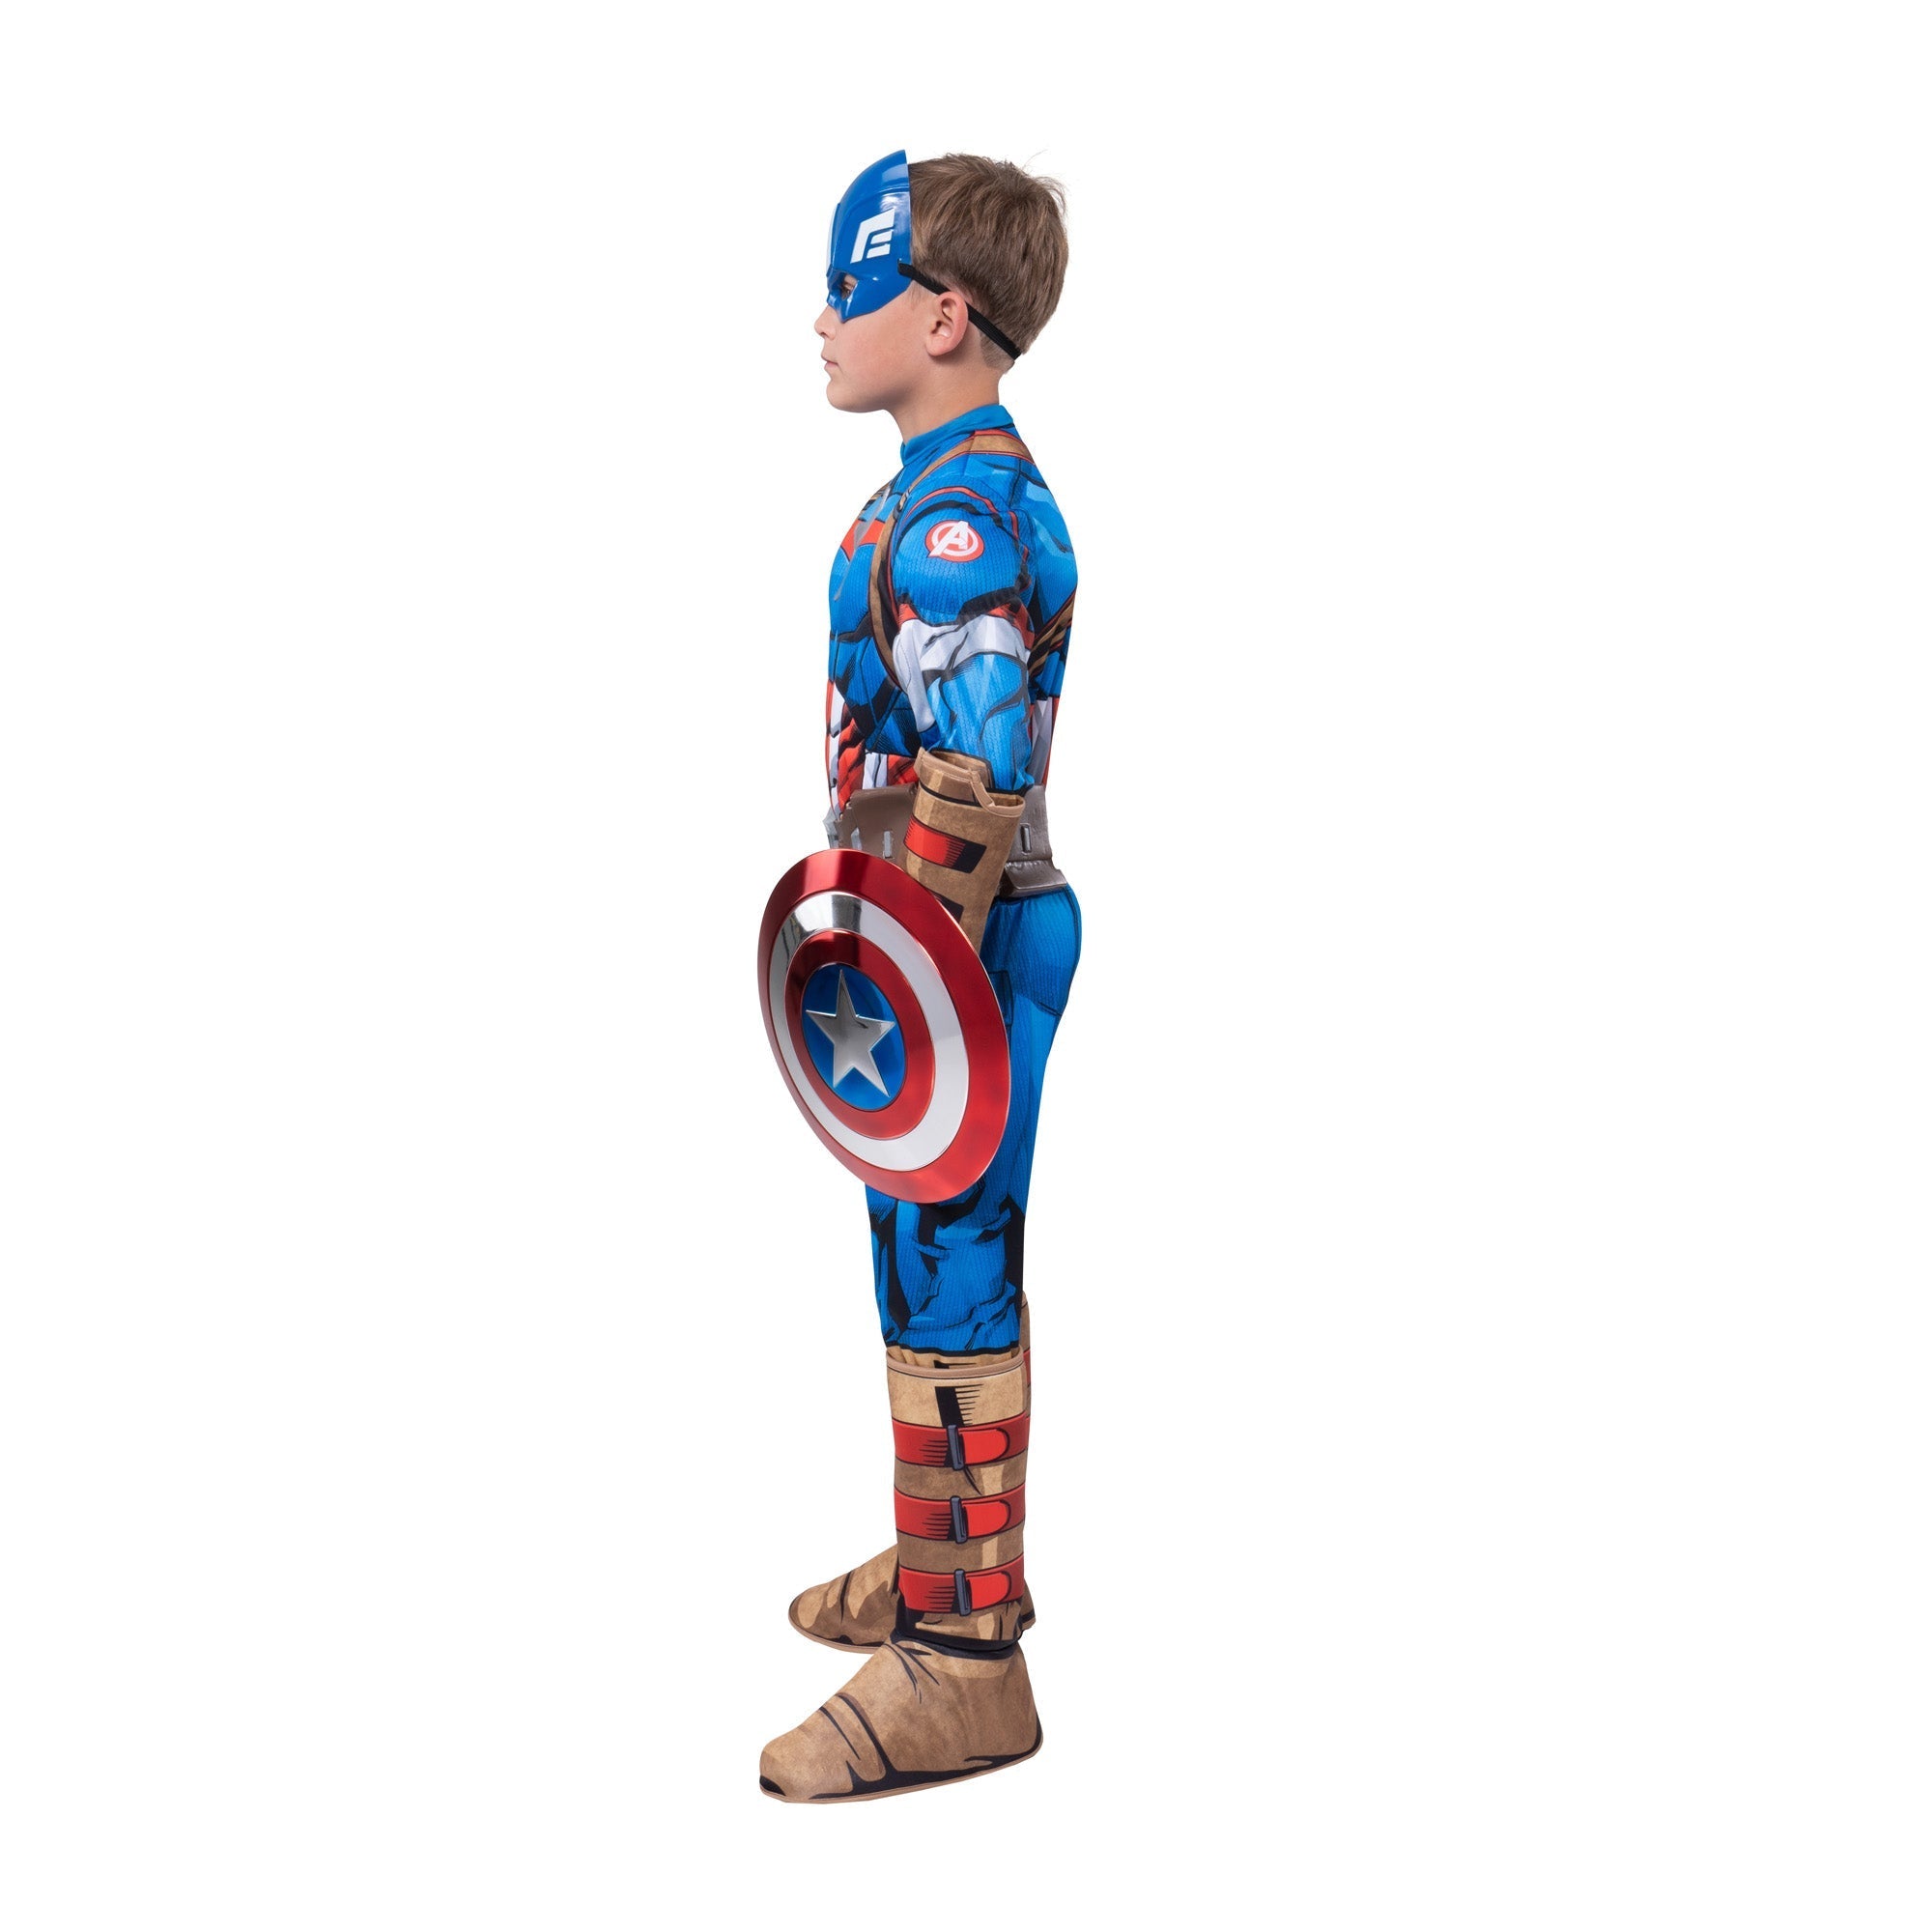 Costume de Captain America avec bouclier pour enfants